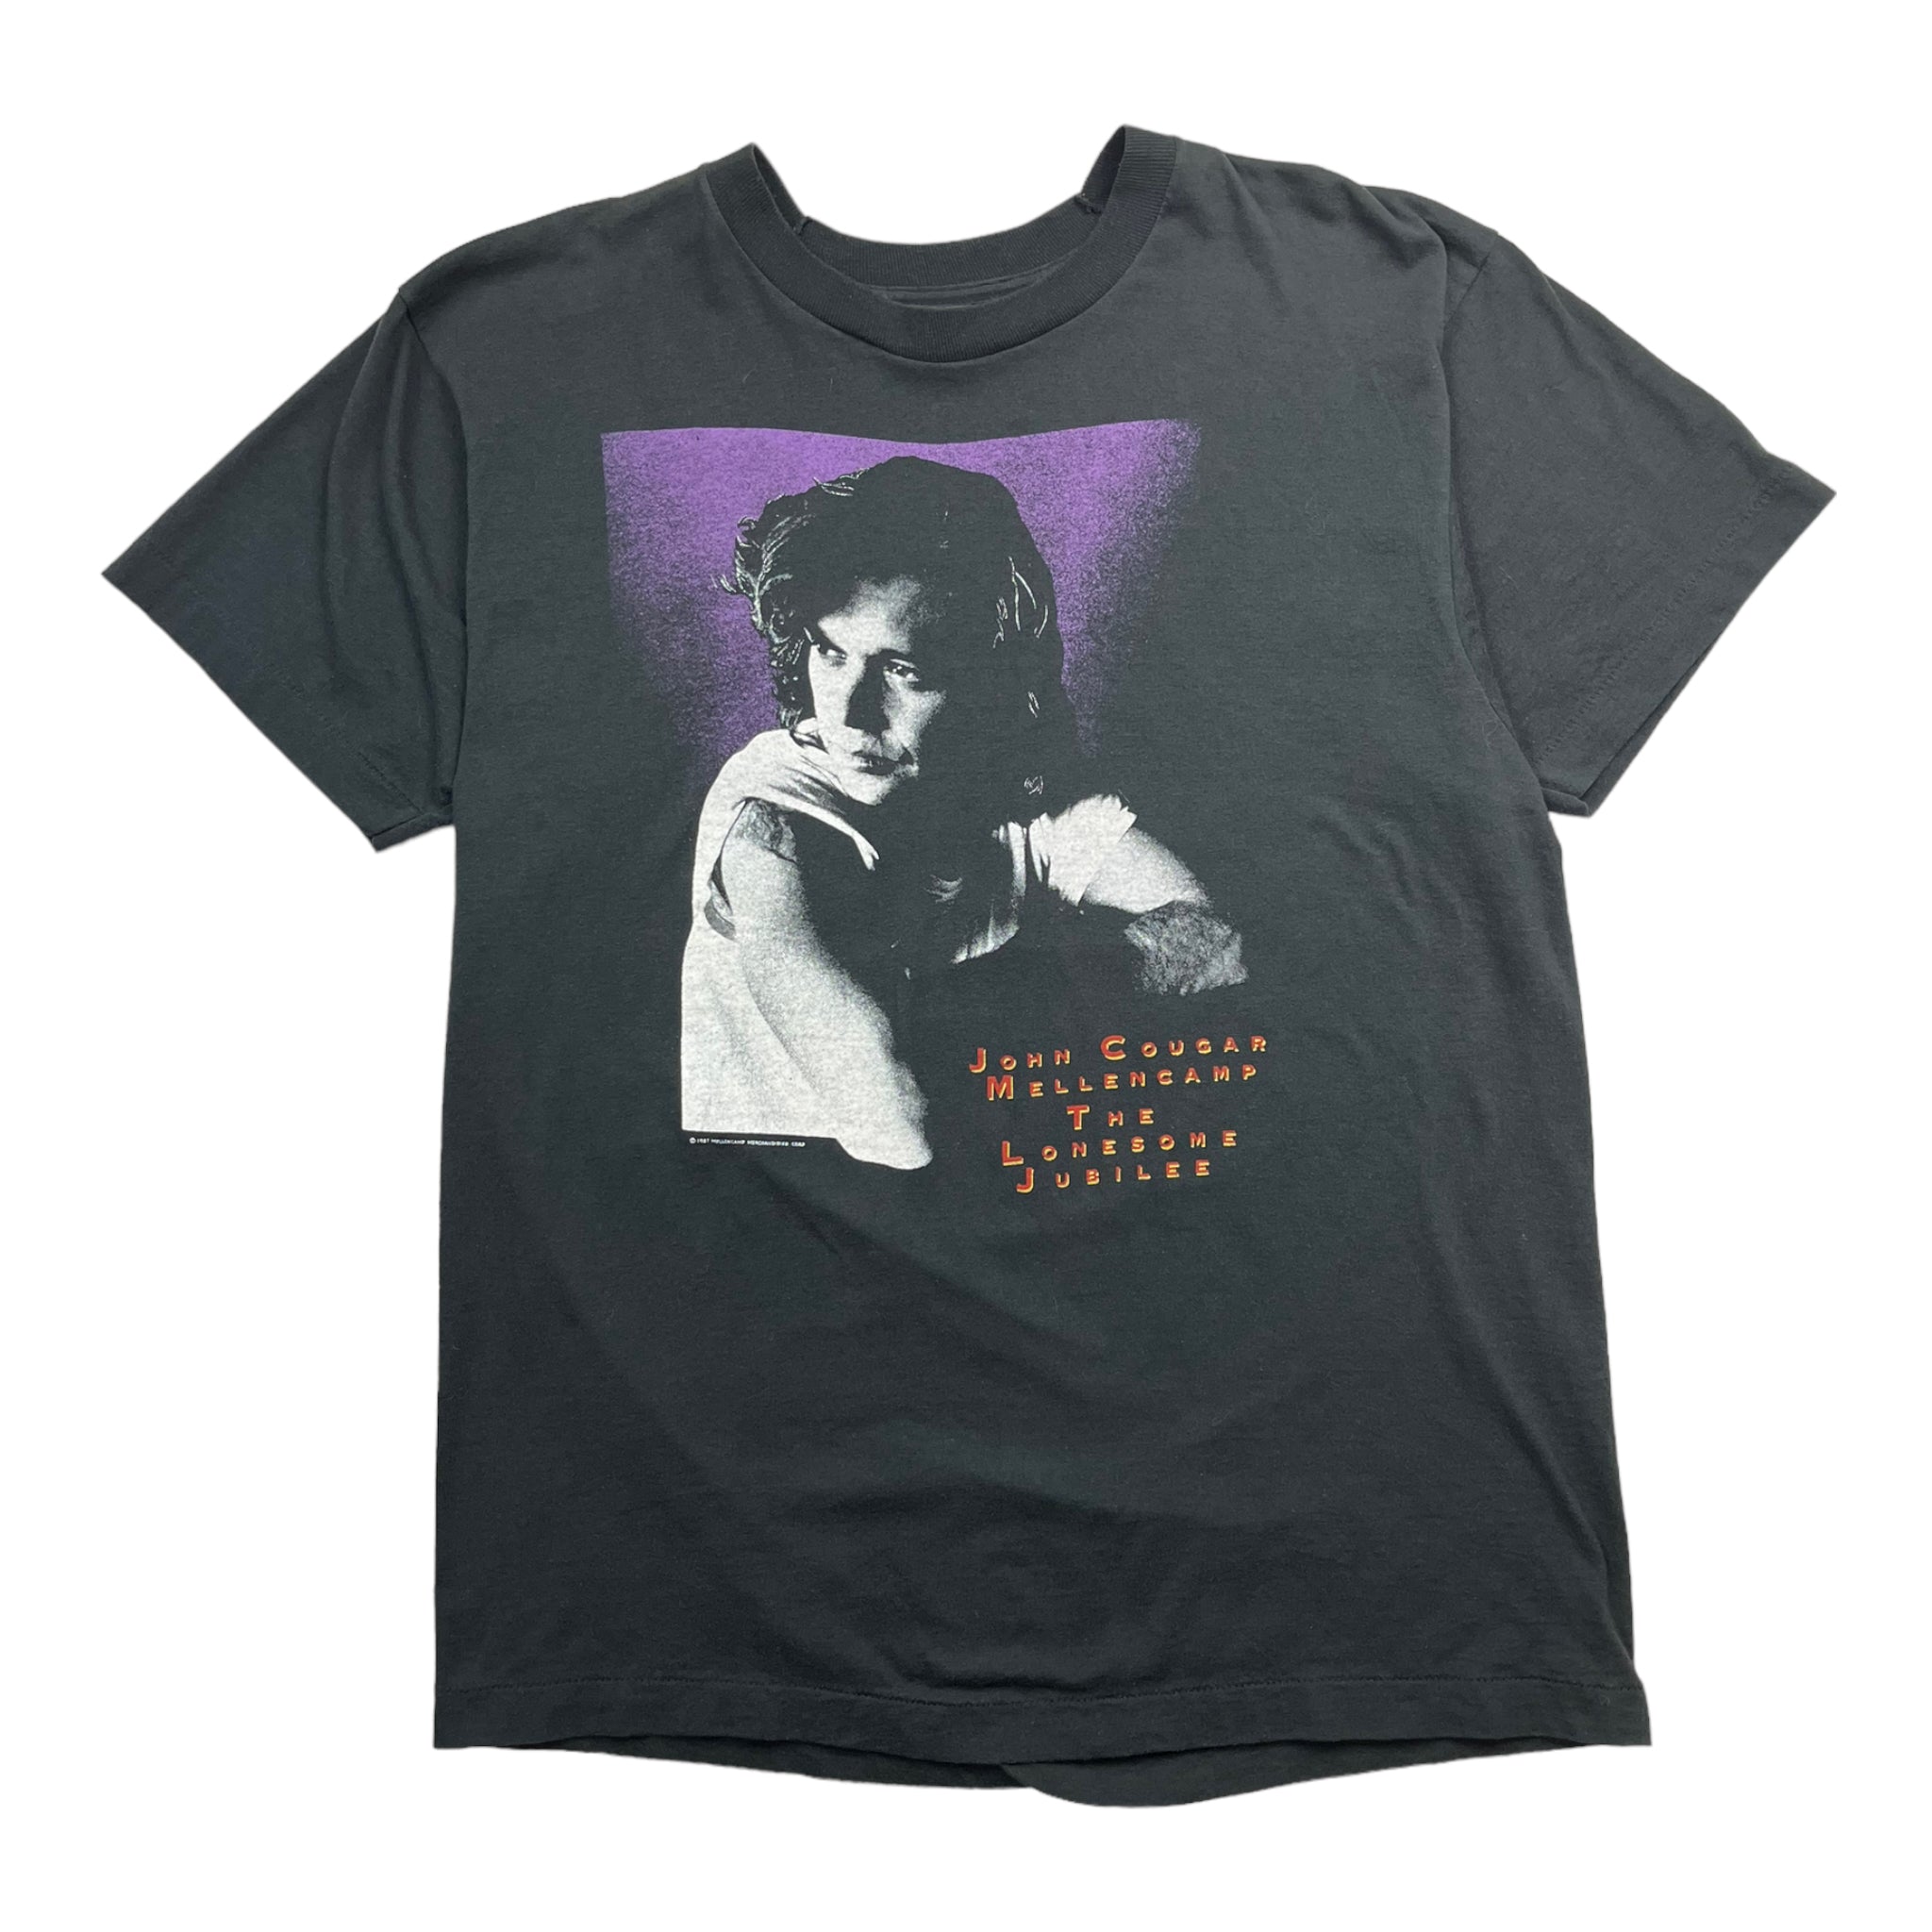 1987 Lonesome Jubilee Rock T-Shirt - John Mellencamp Style